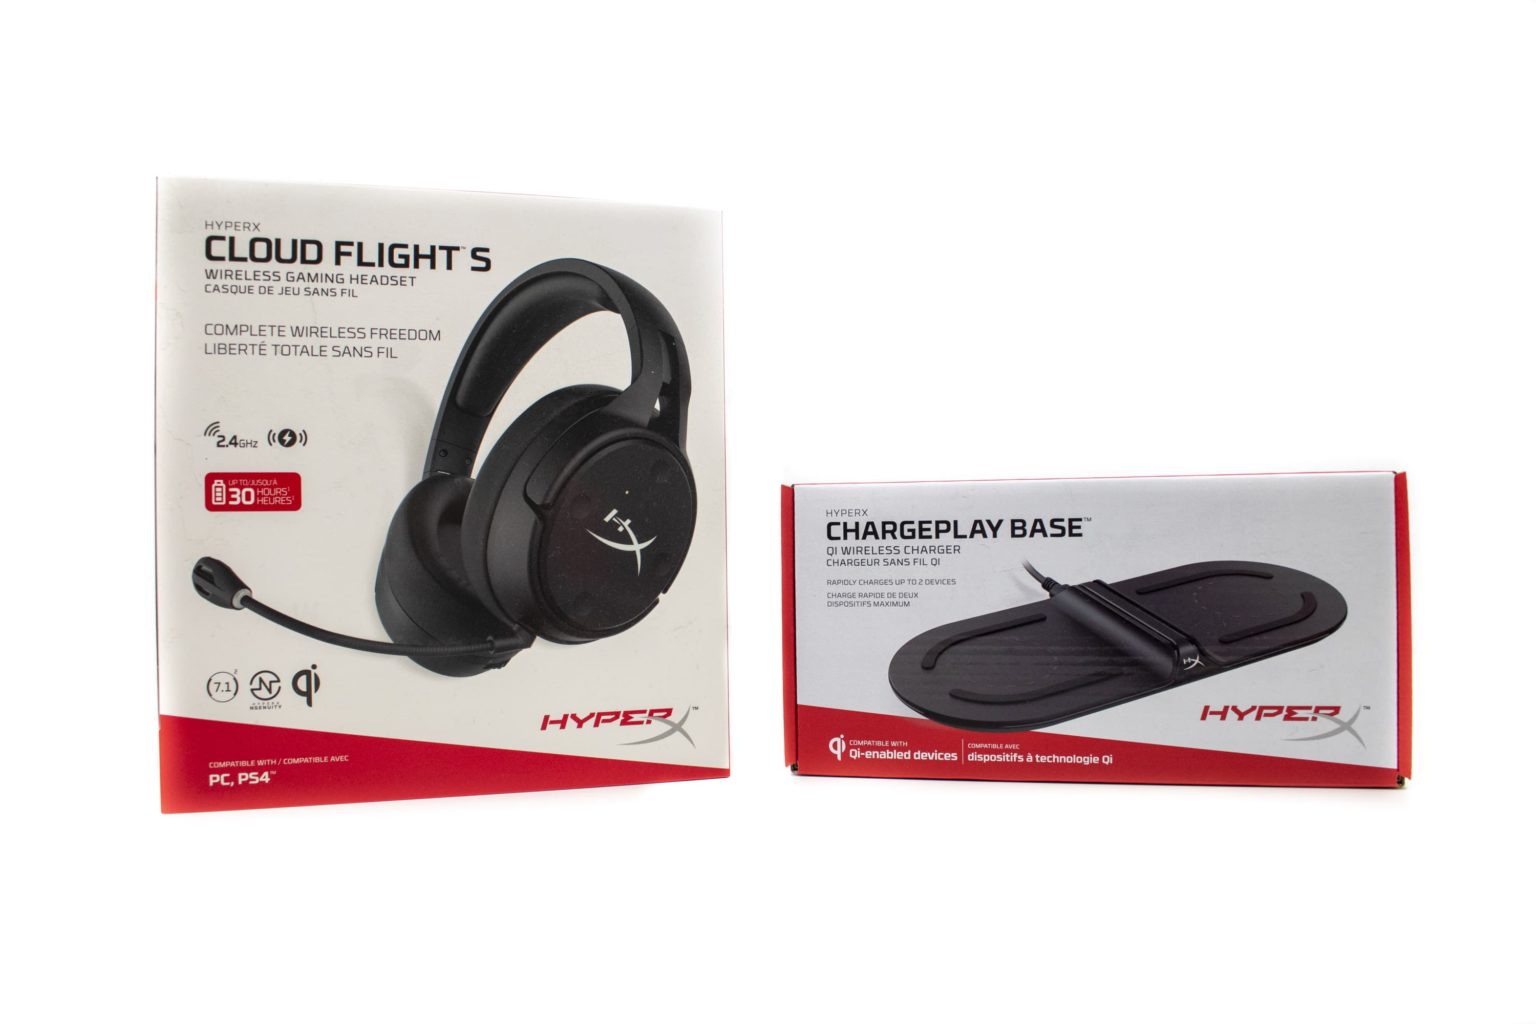 Test du casque de jeu HyperX Cloud Flight S : un confort de port convaincant et des performances audio faibles